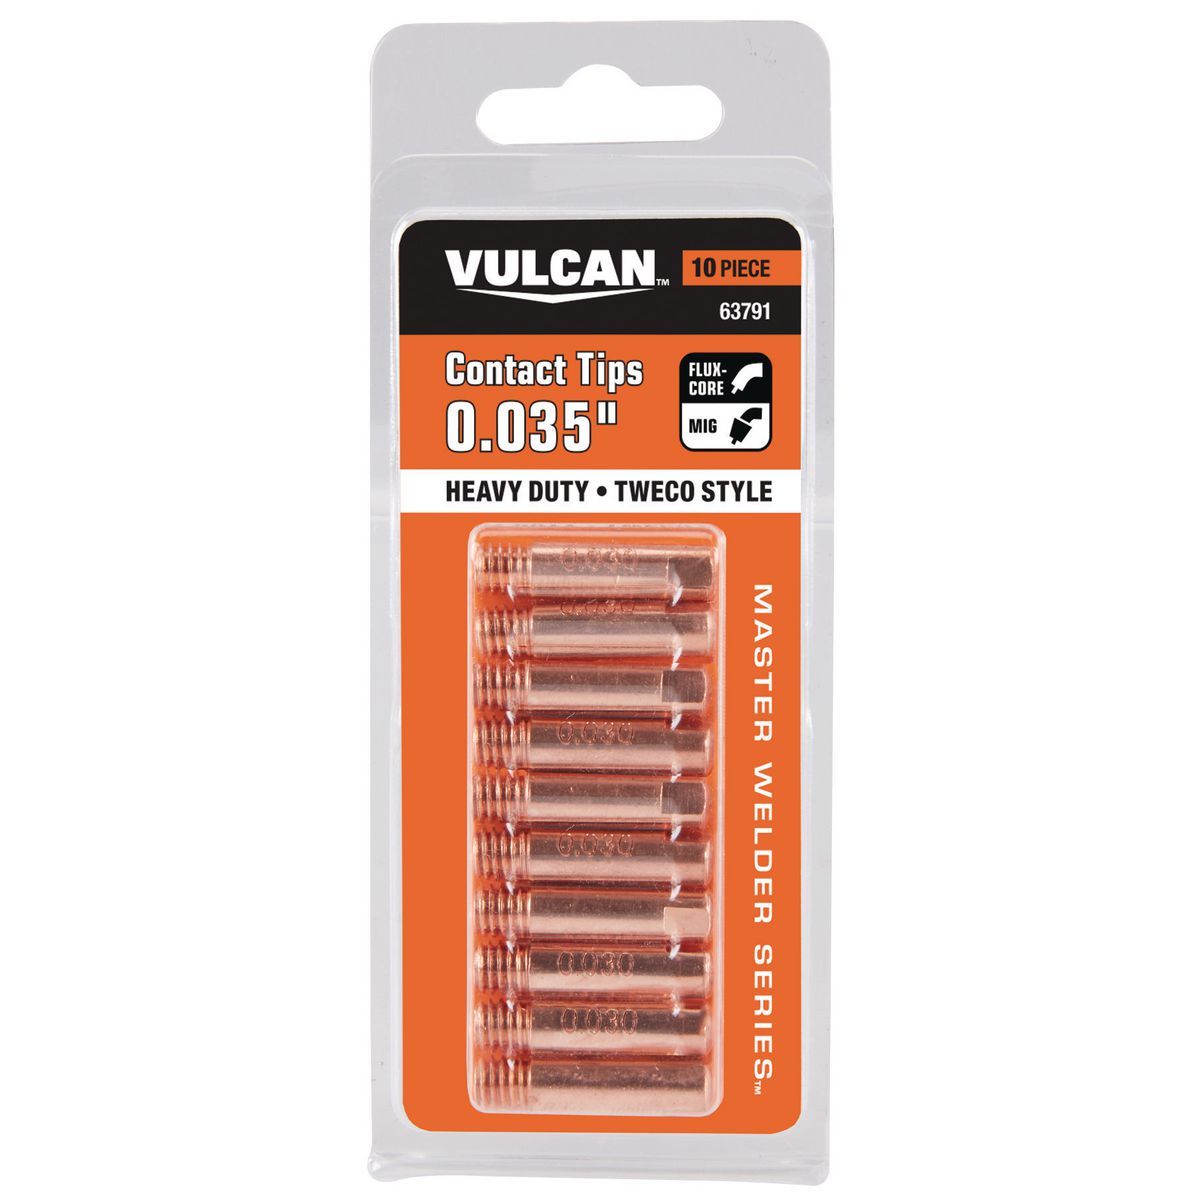 VULCAN 0.035 in. MIG Welding Contact Tips, 10 Pack